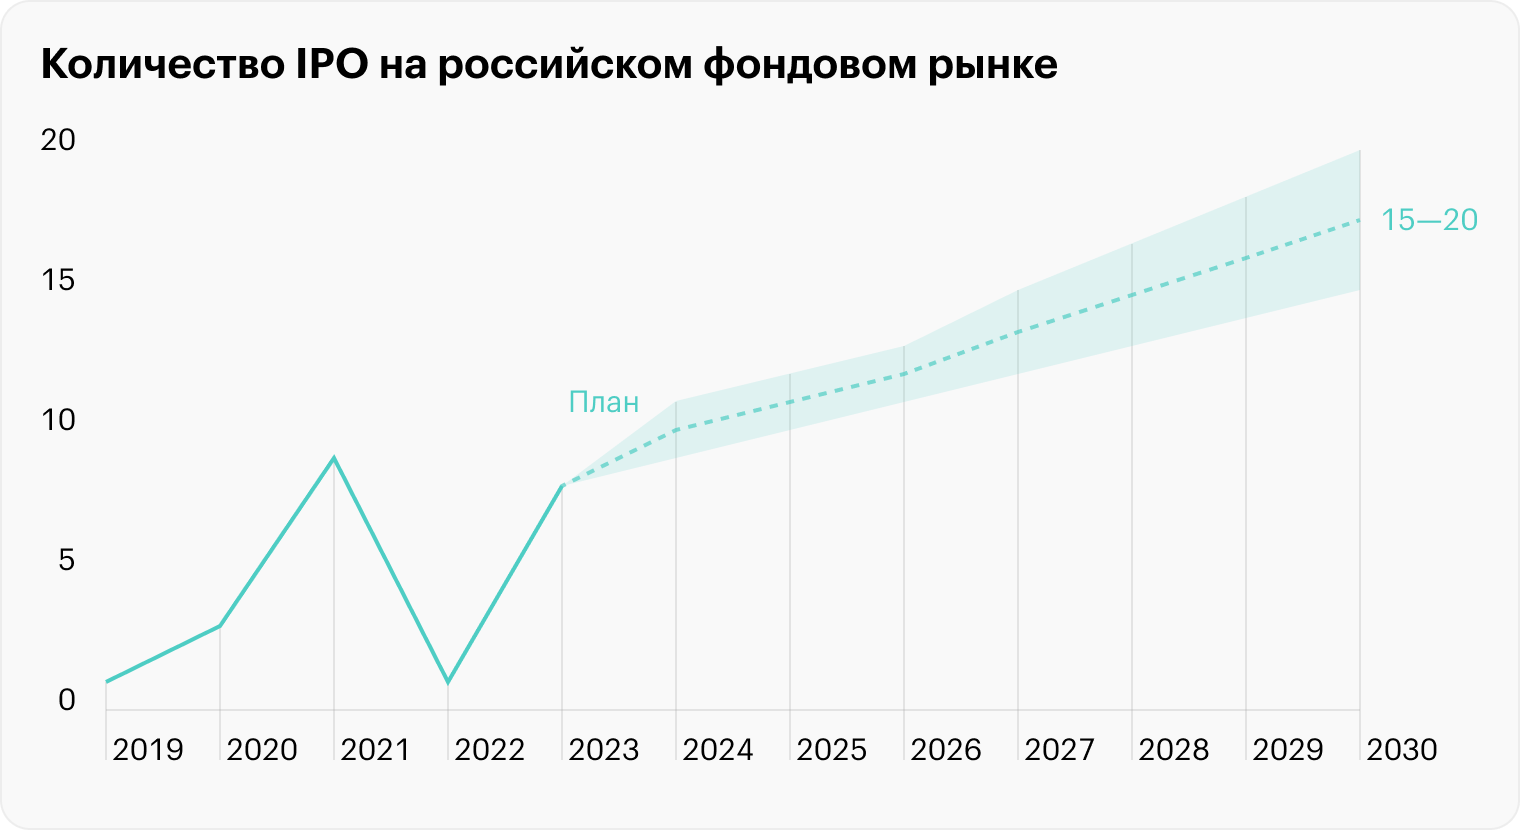 Источник: данные Московской биржи, план правительства и Банка России